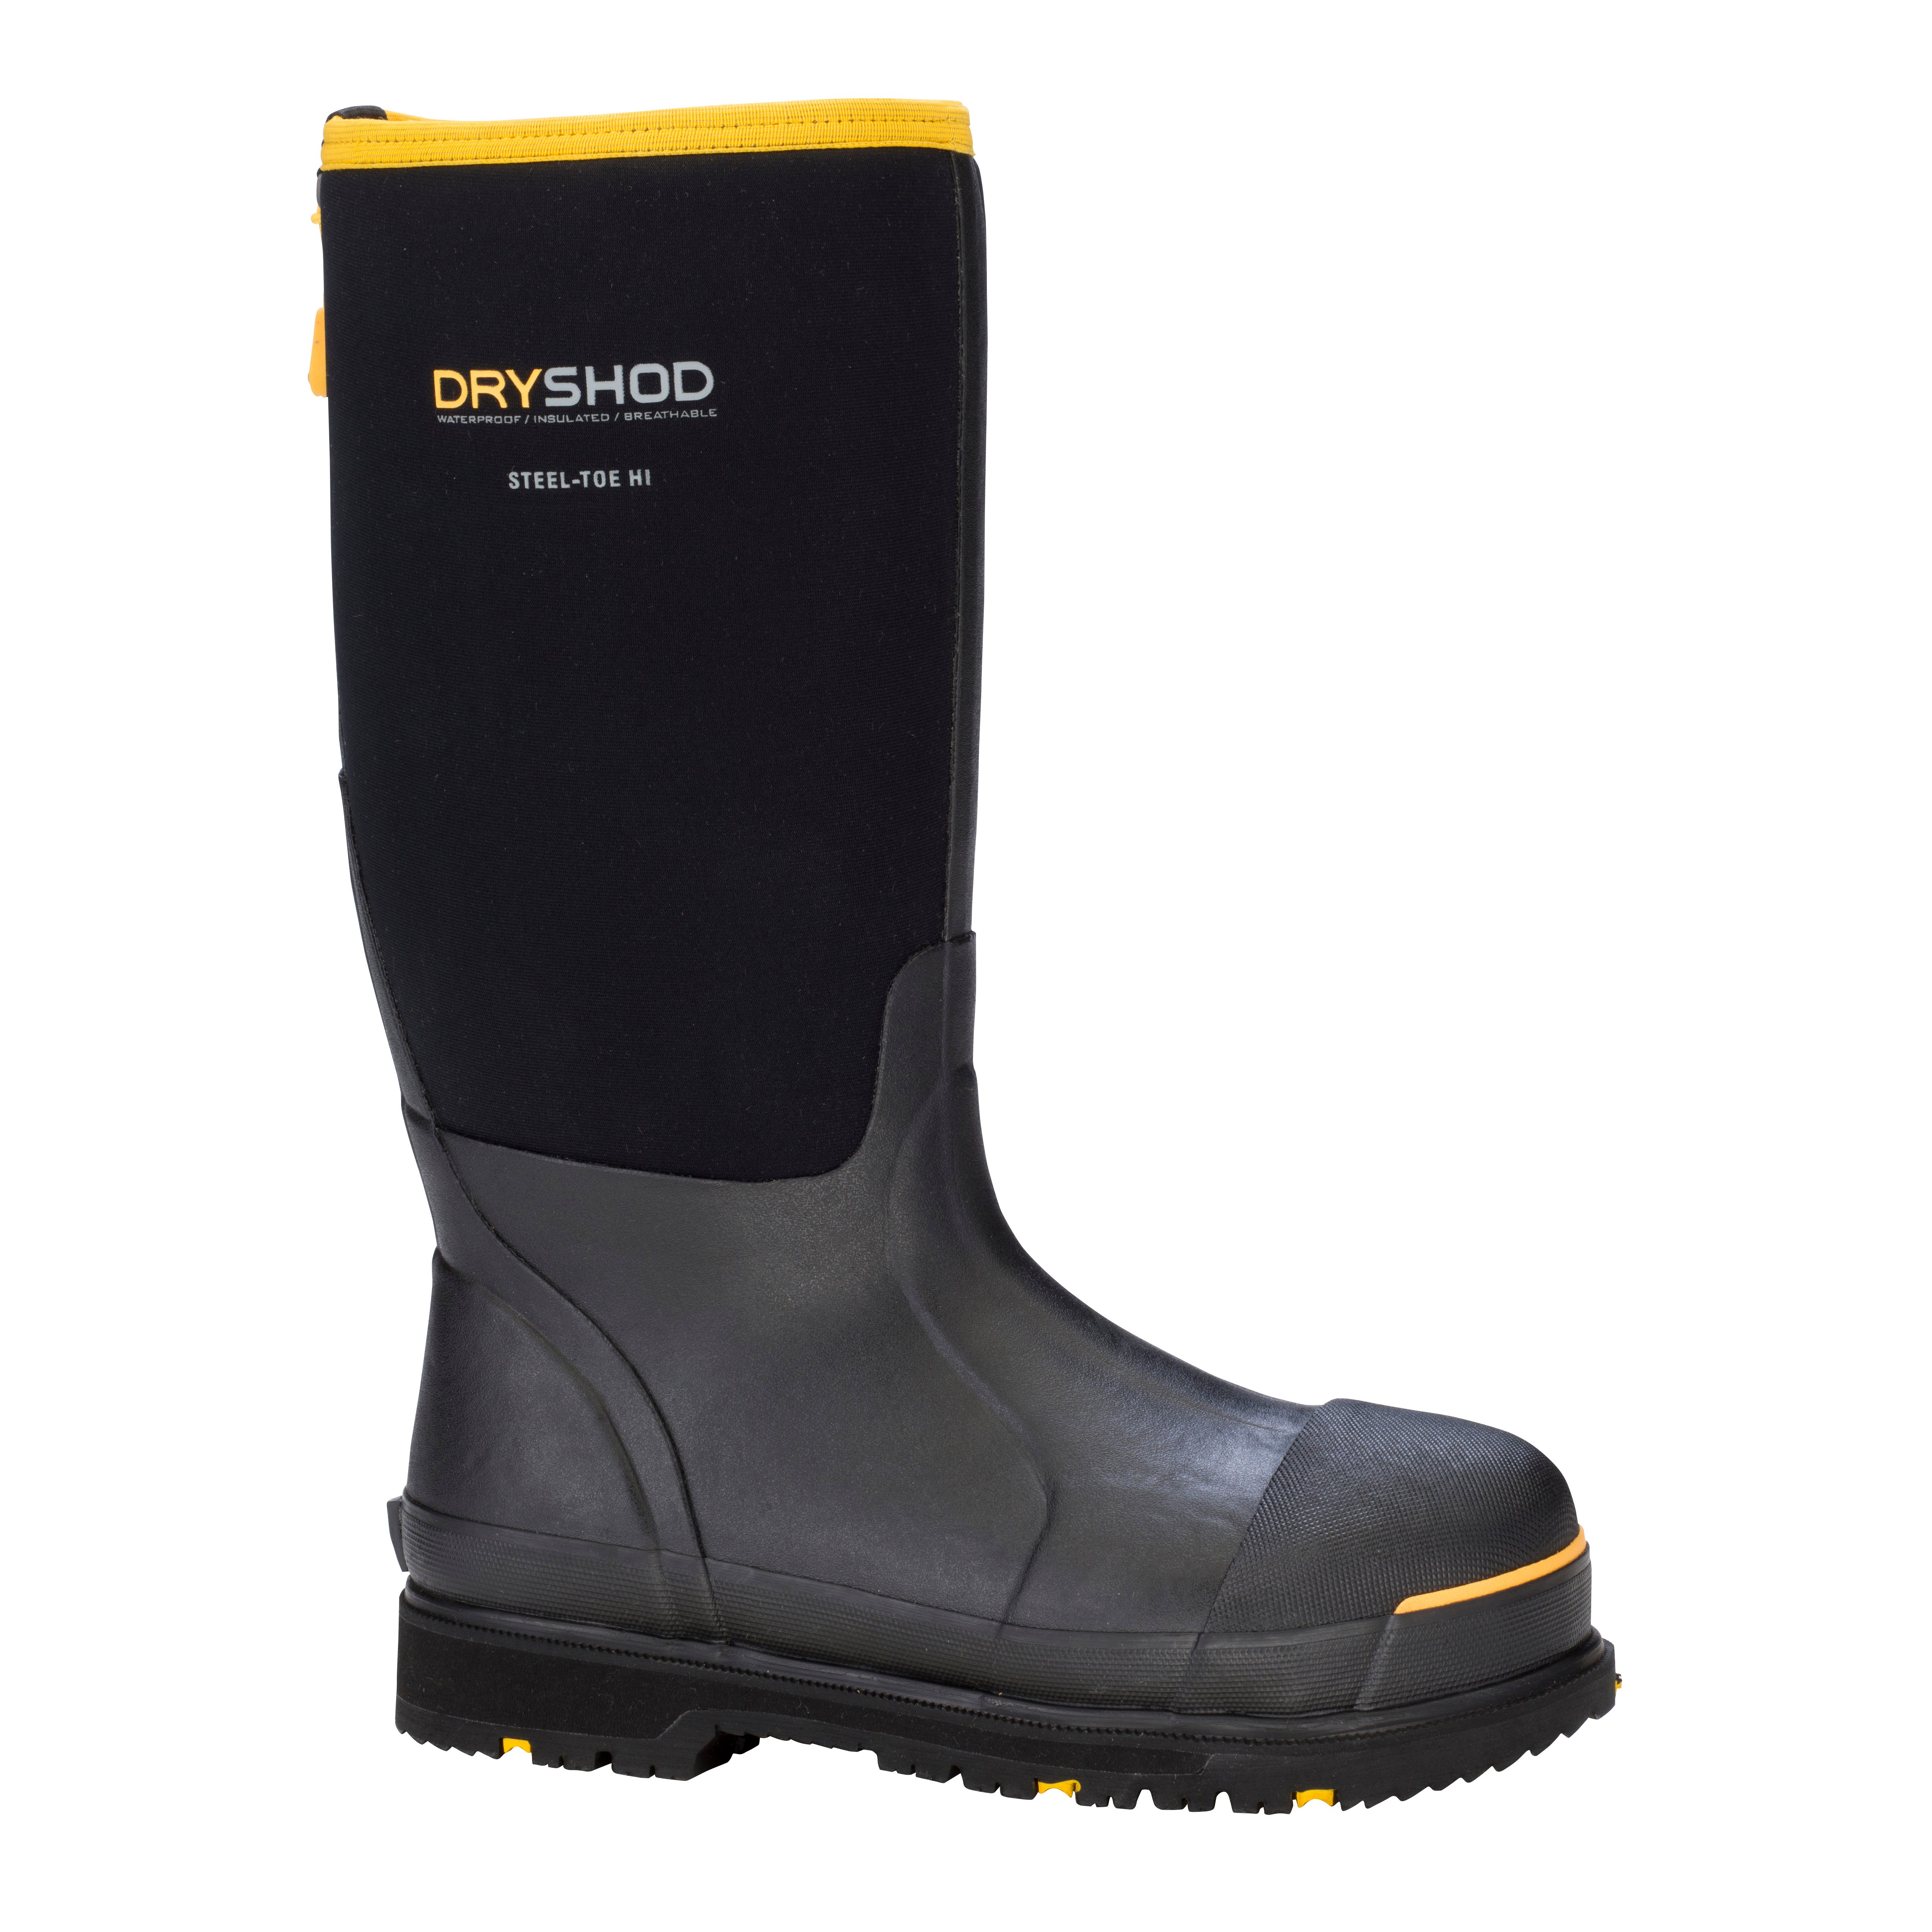 Steel-Toe Protective Work Boot – Dryshod Waterproof Boots